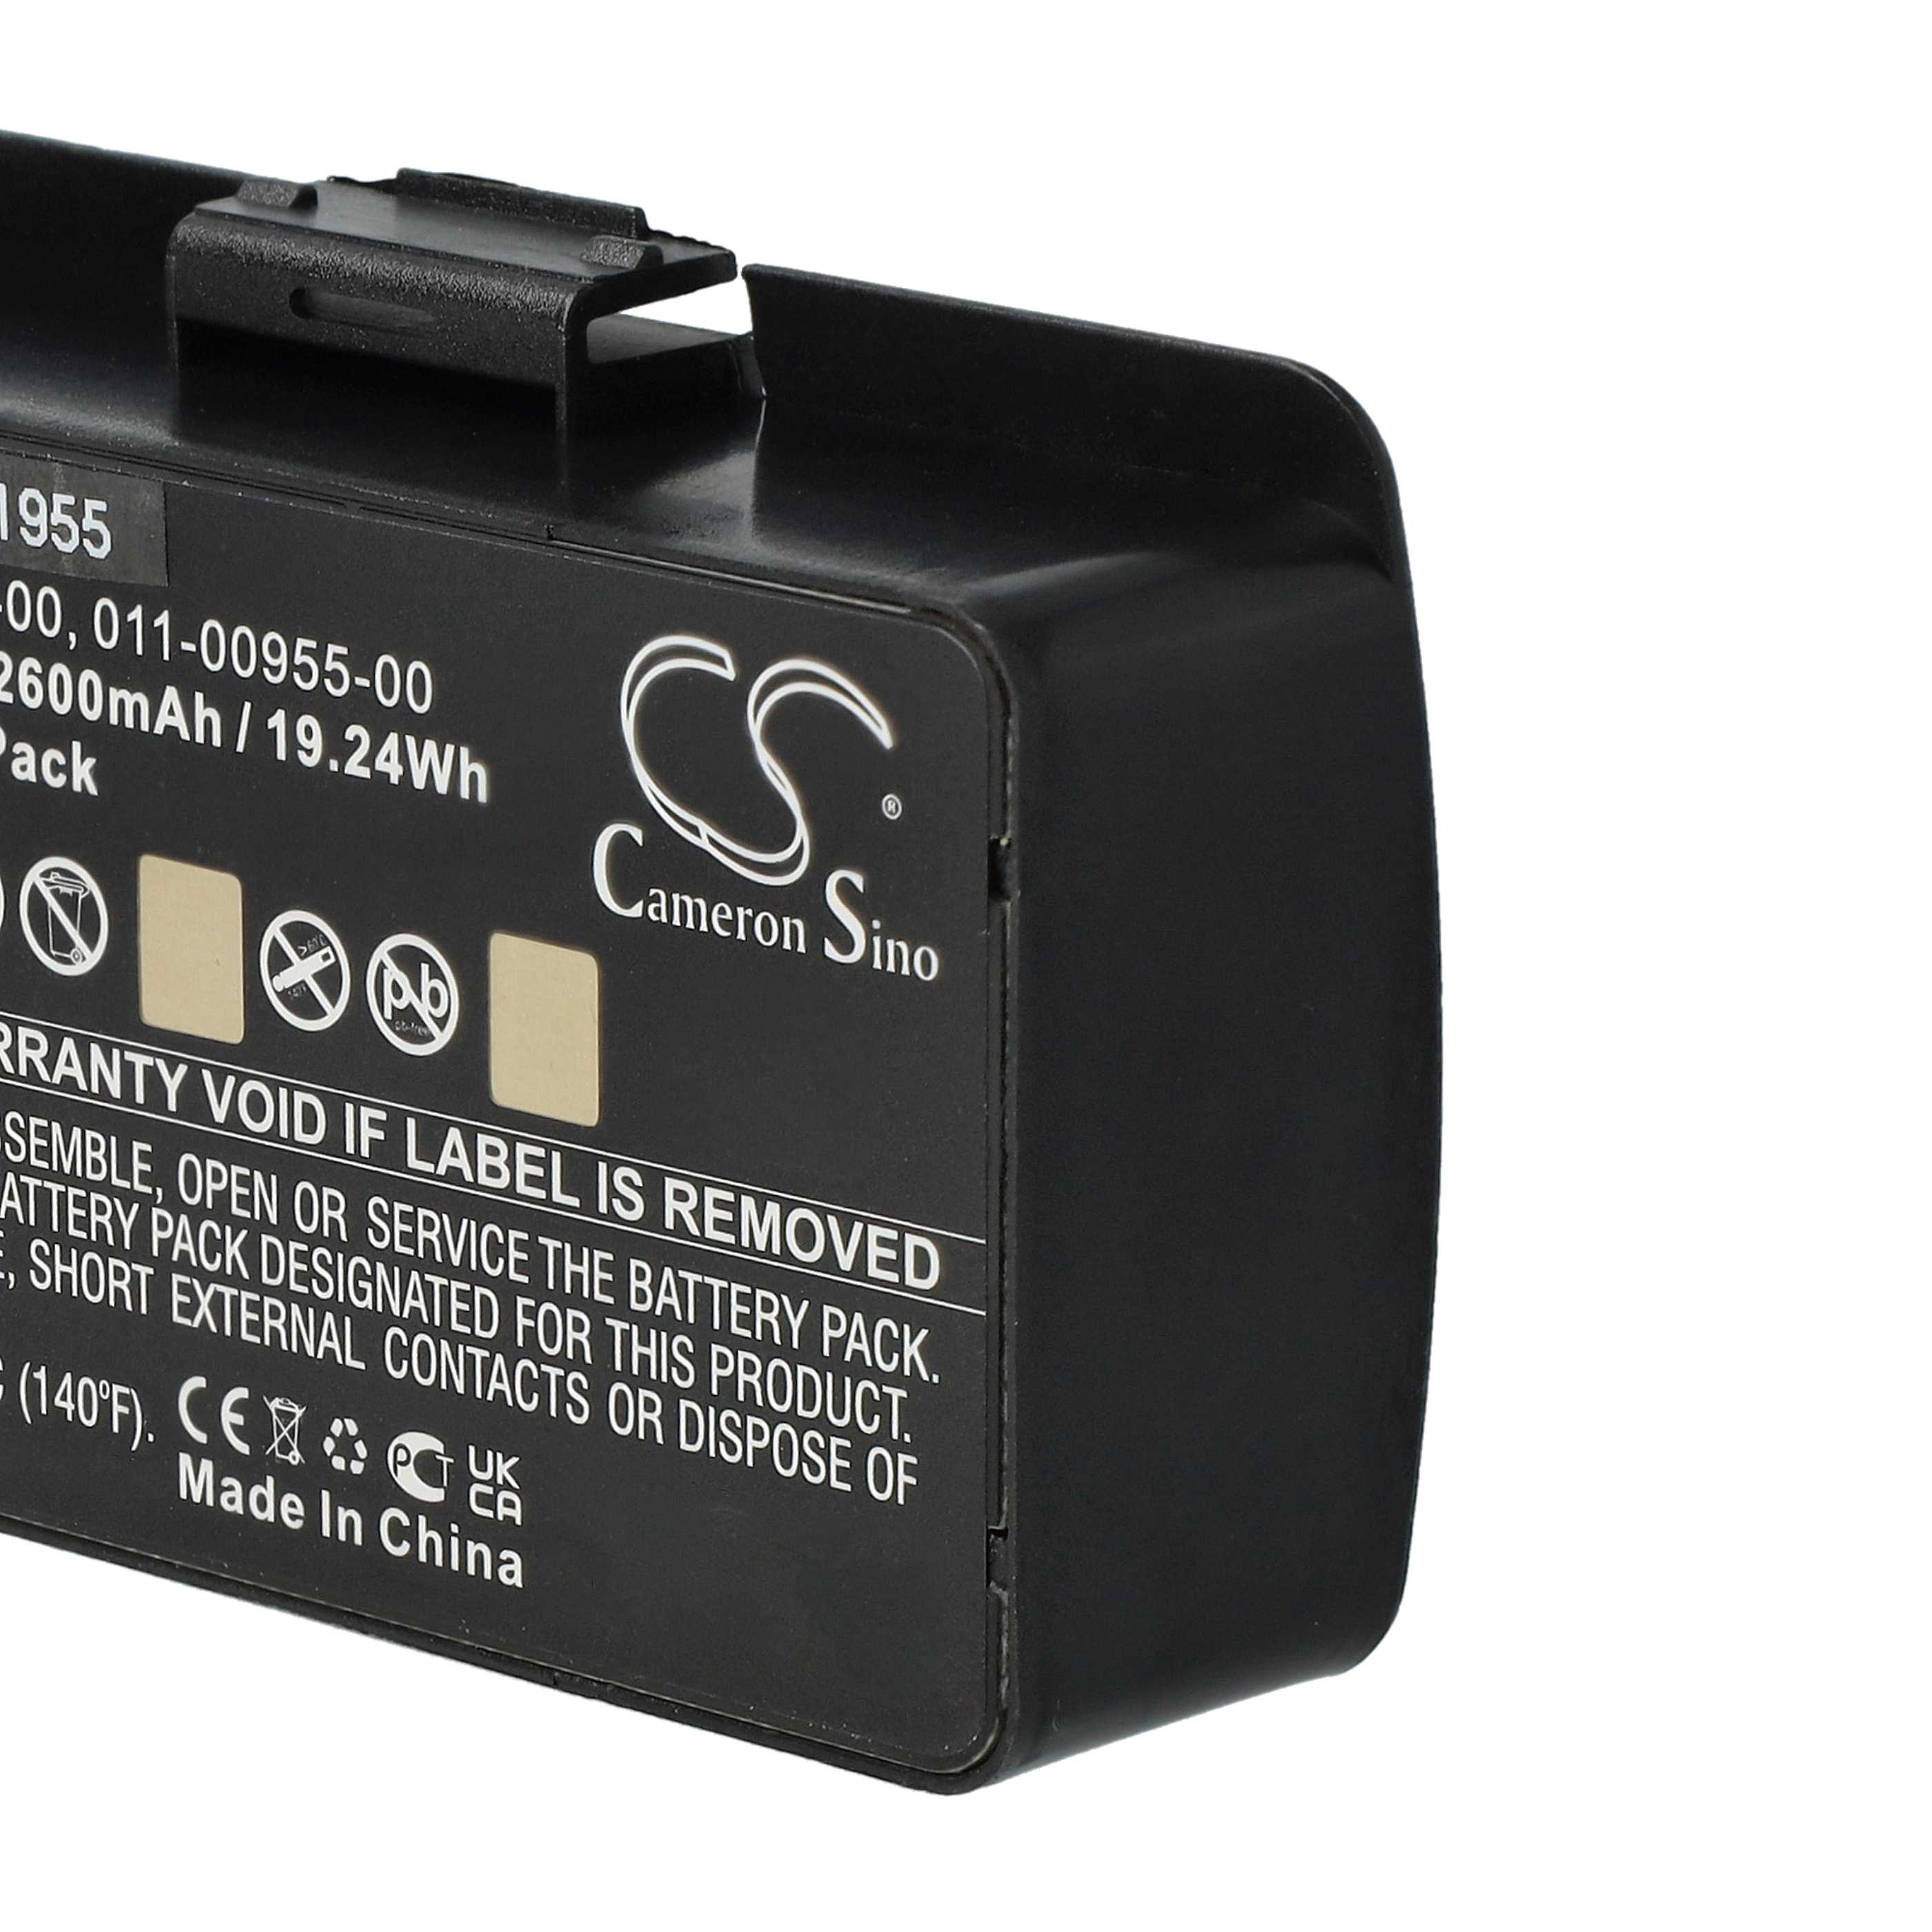 Batterie remplace Garmin 010-10517-00, 010-10517-01, 01070800001 pour navigation GPS - 2600mAh 8,4V Li-ion